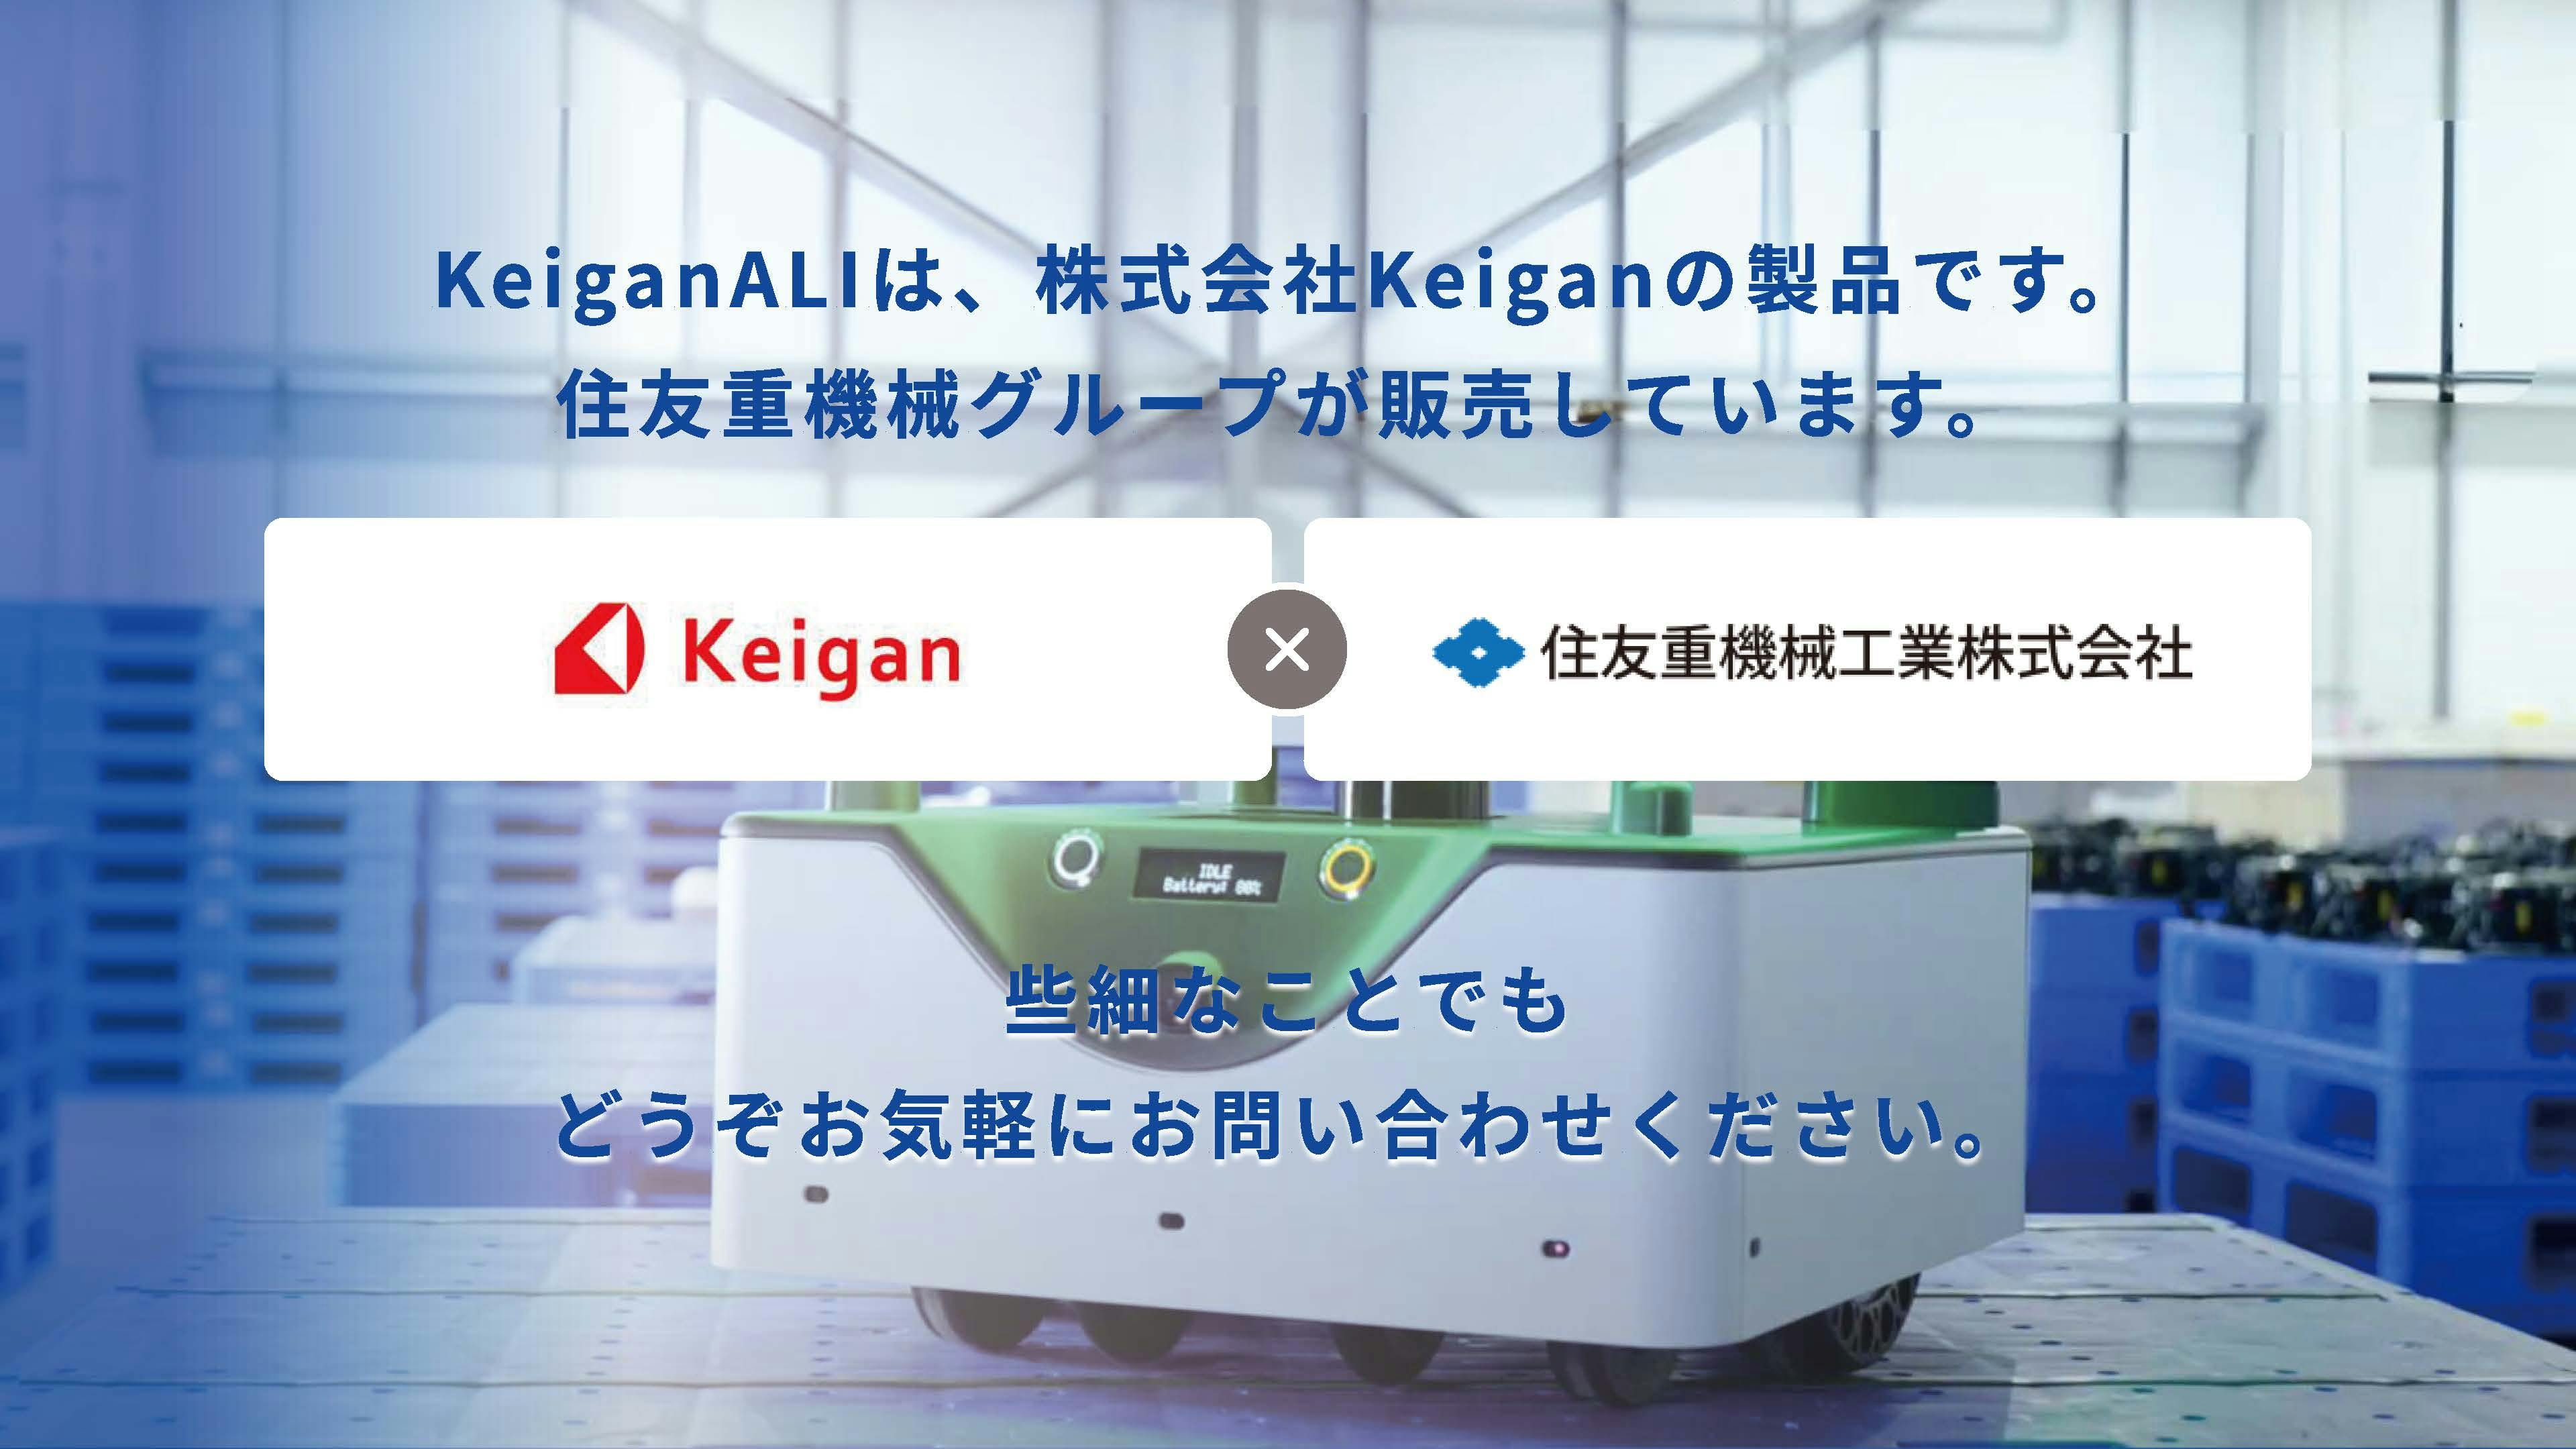 さまざまな現場の自動化を推進する自律移動ロボット「KeiganALI」